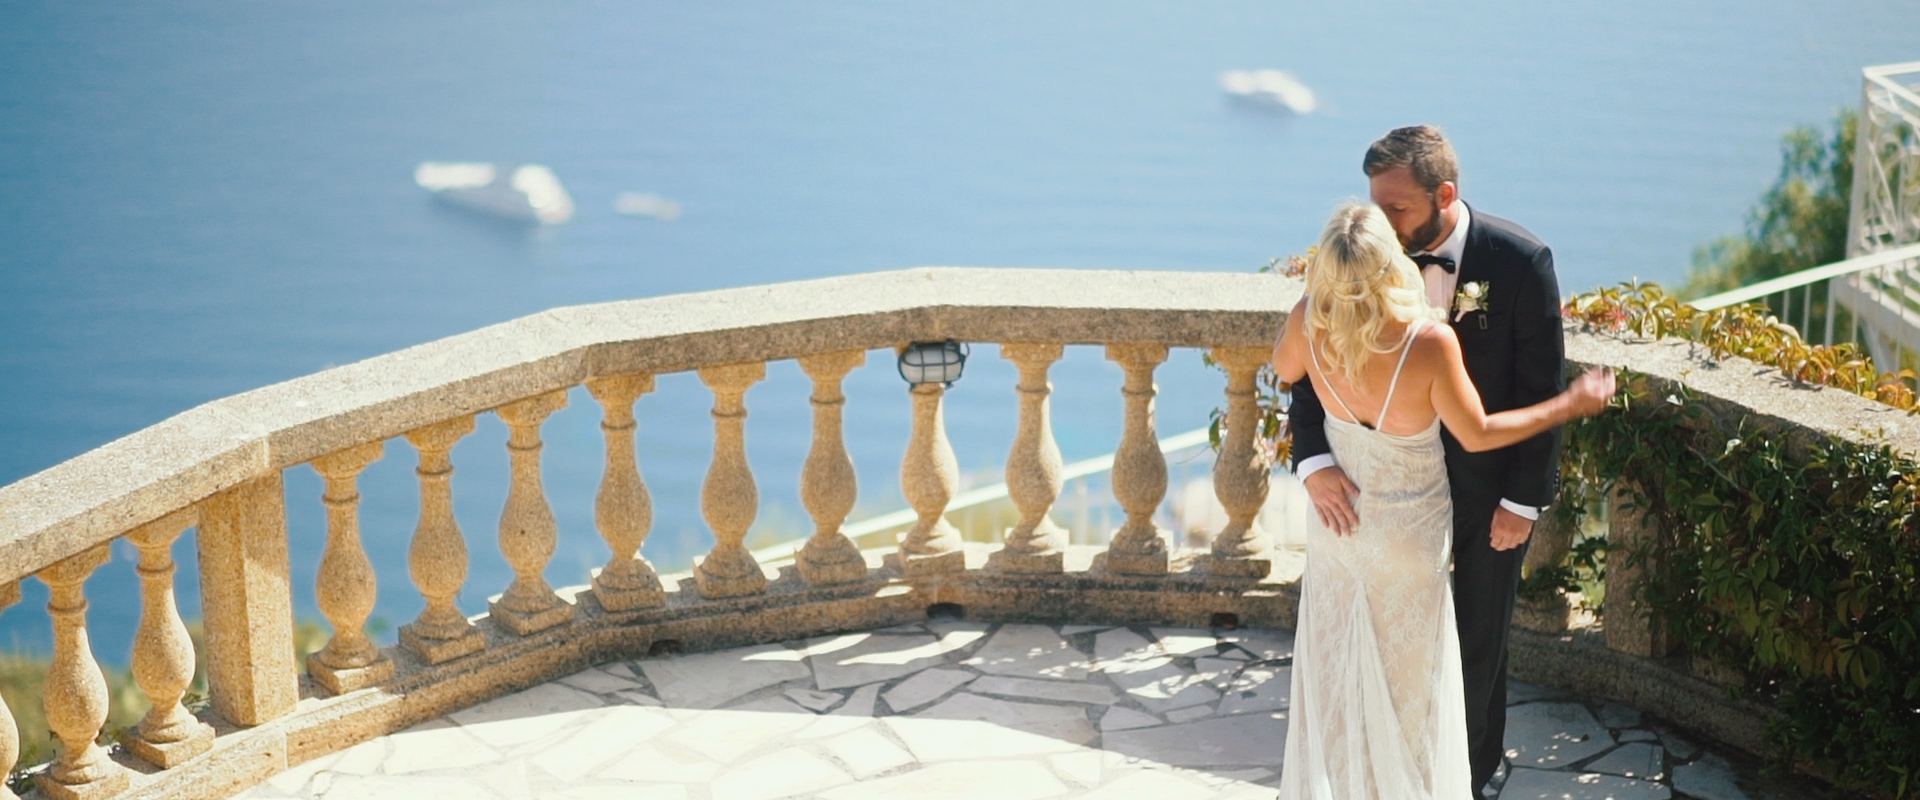 Chateau De La Chevre D’or, Cote d’Azur wedding videographer